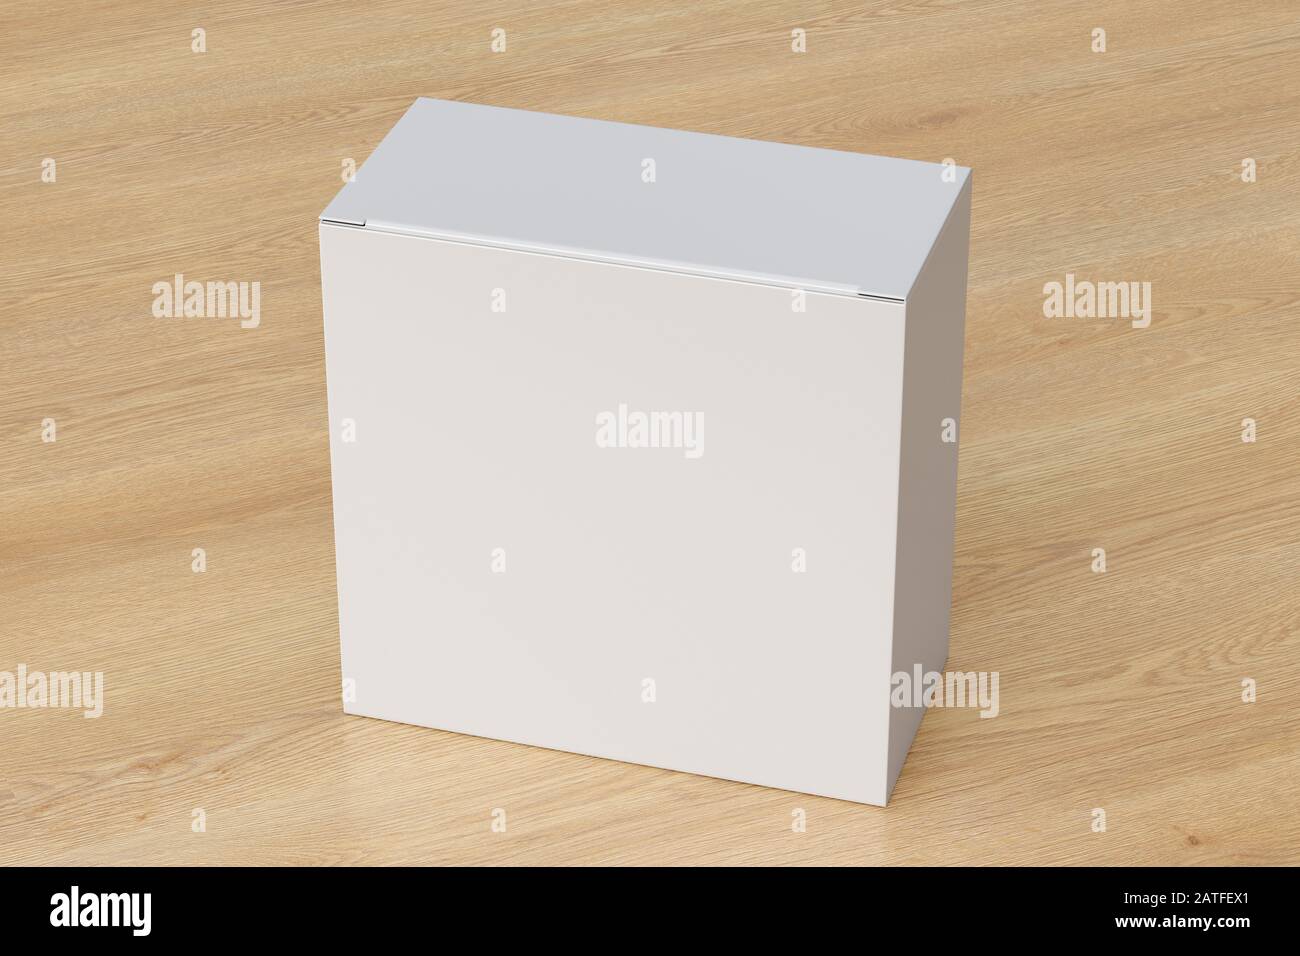 Boîte carrée large blanche vierge avec couvercle à rabat fermé sur fond en bois. Chemin de détourage autour de la maquette de boîte Banque D'Images